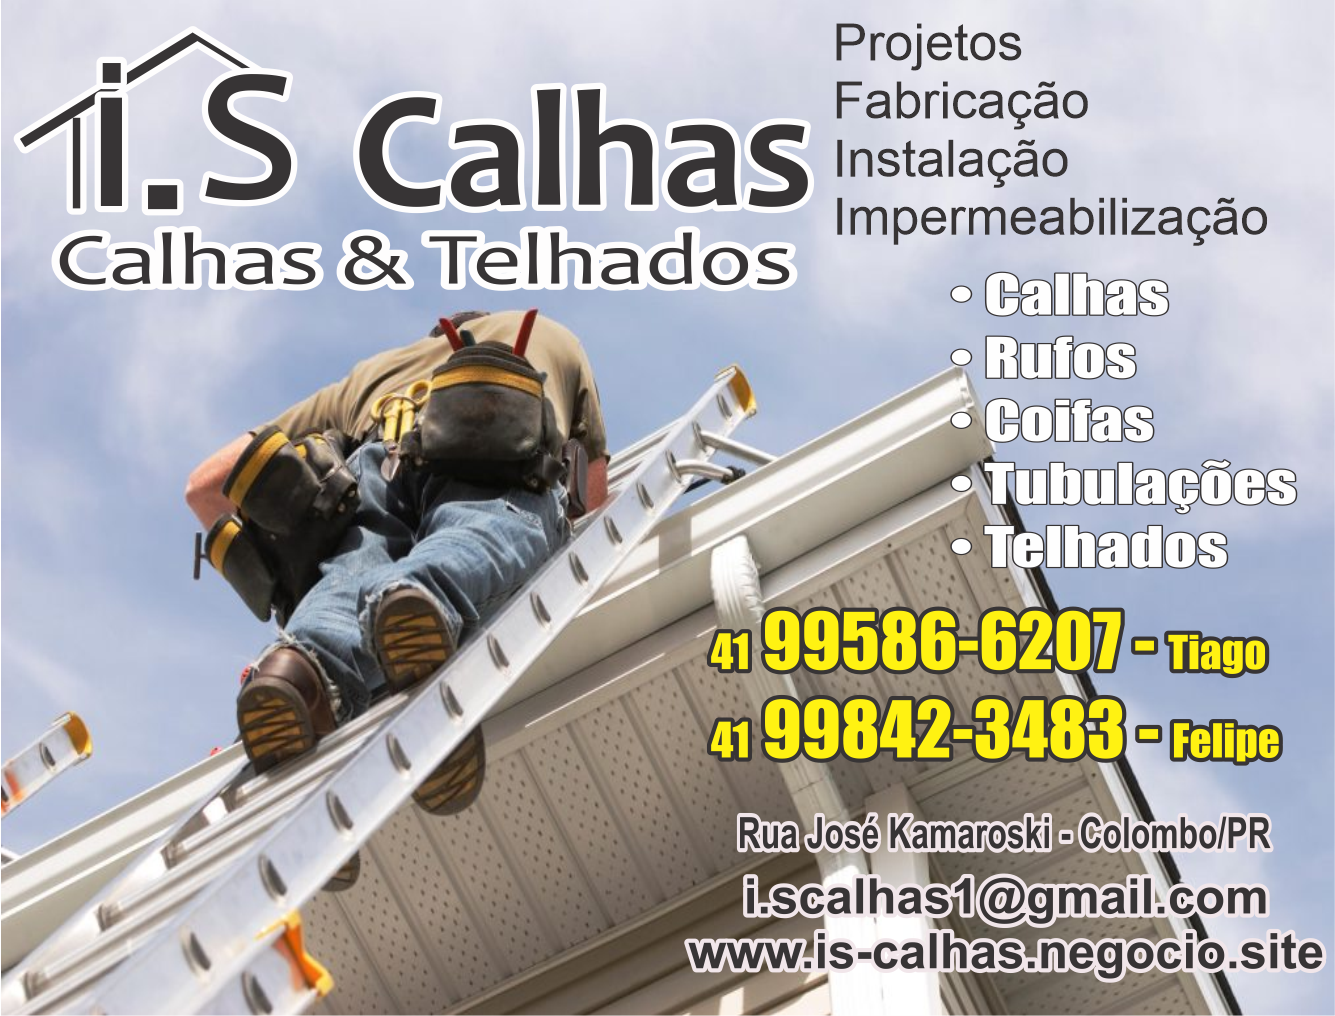  I.S Calhas e Telhados      RUA JOSÉ KAMAROSKI, , COLOMBO - PR  Fones: (41) 99586-6207 /